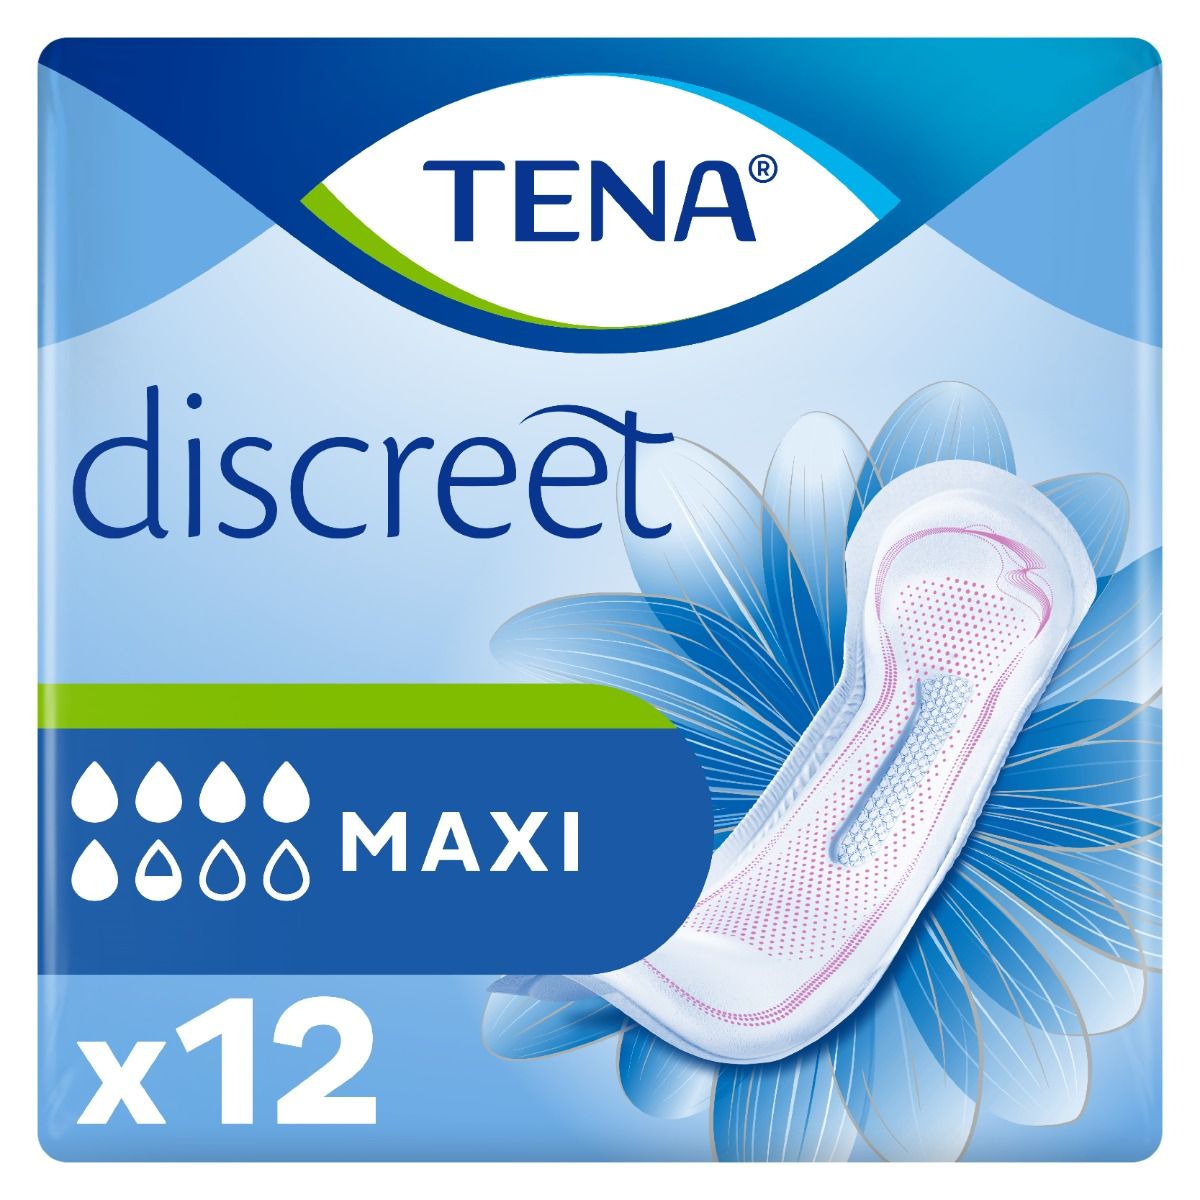 TENA Discreet Maxi 12 st